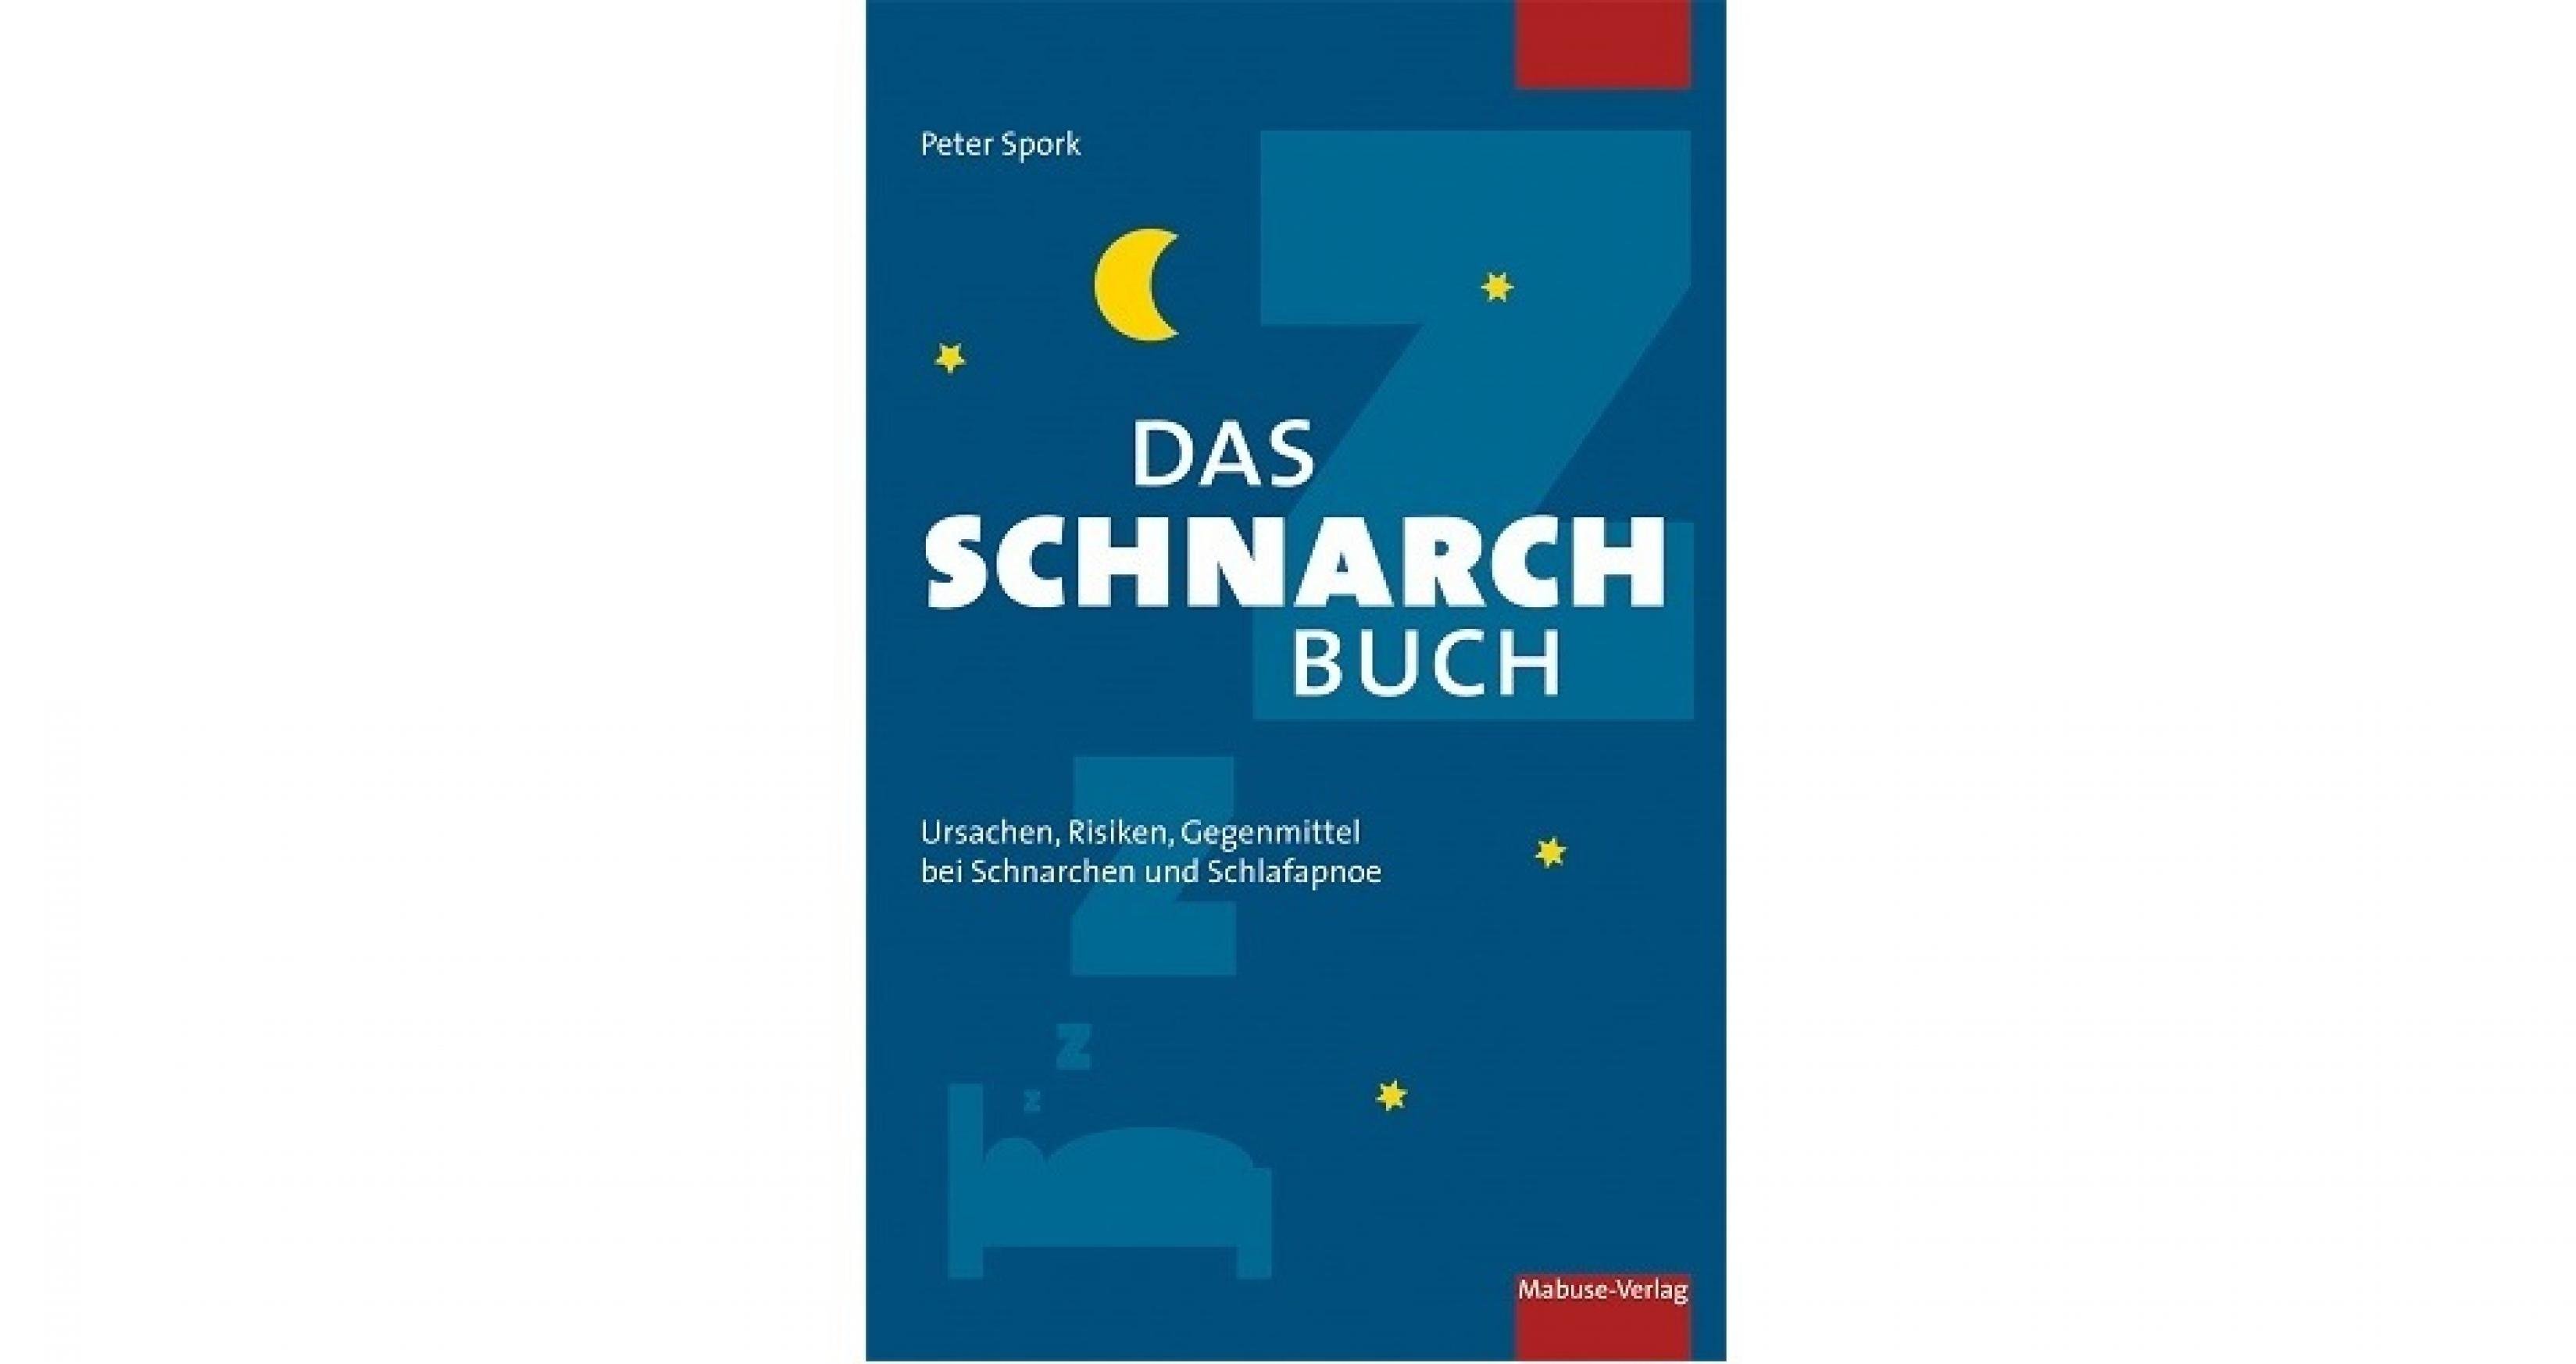 Buchcover von Peter Sporks Buch: Das Schnarchbuch. Ursachen, Risiken, Gegenmittel bei Schnarchen und Schlafapnoe, Mabuse-Verlag Frankfurt Am Main, 2019, 188 Seiten, 14,95 Euro.